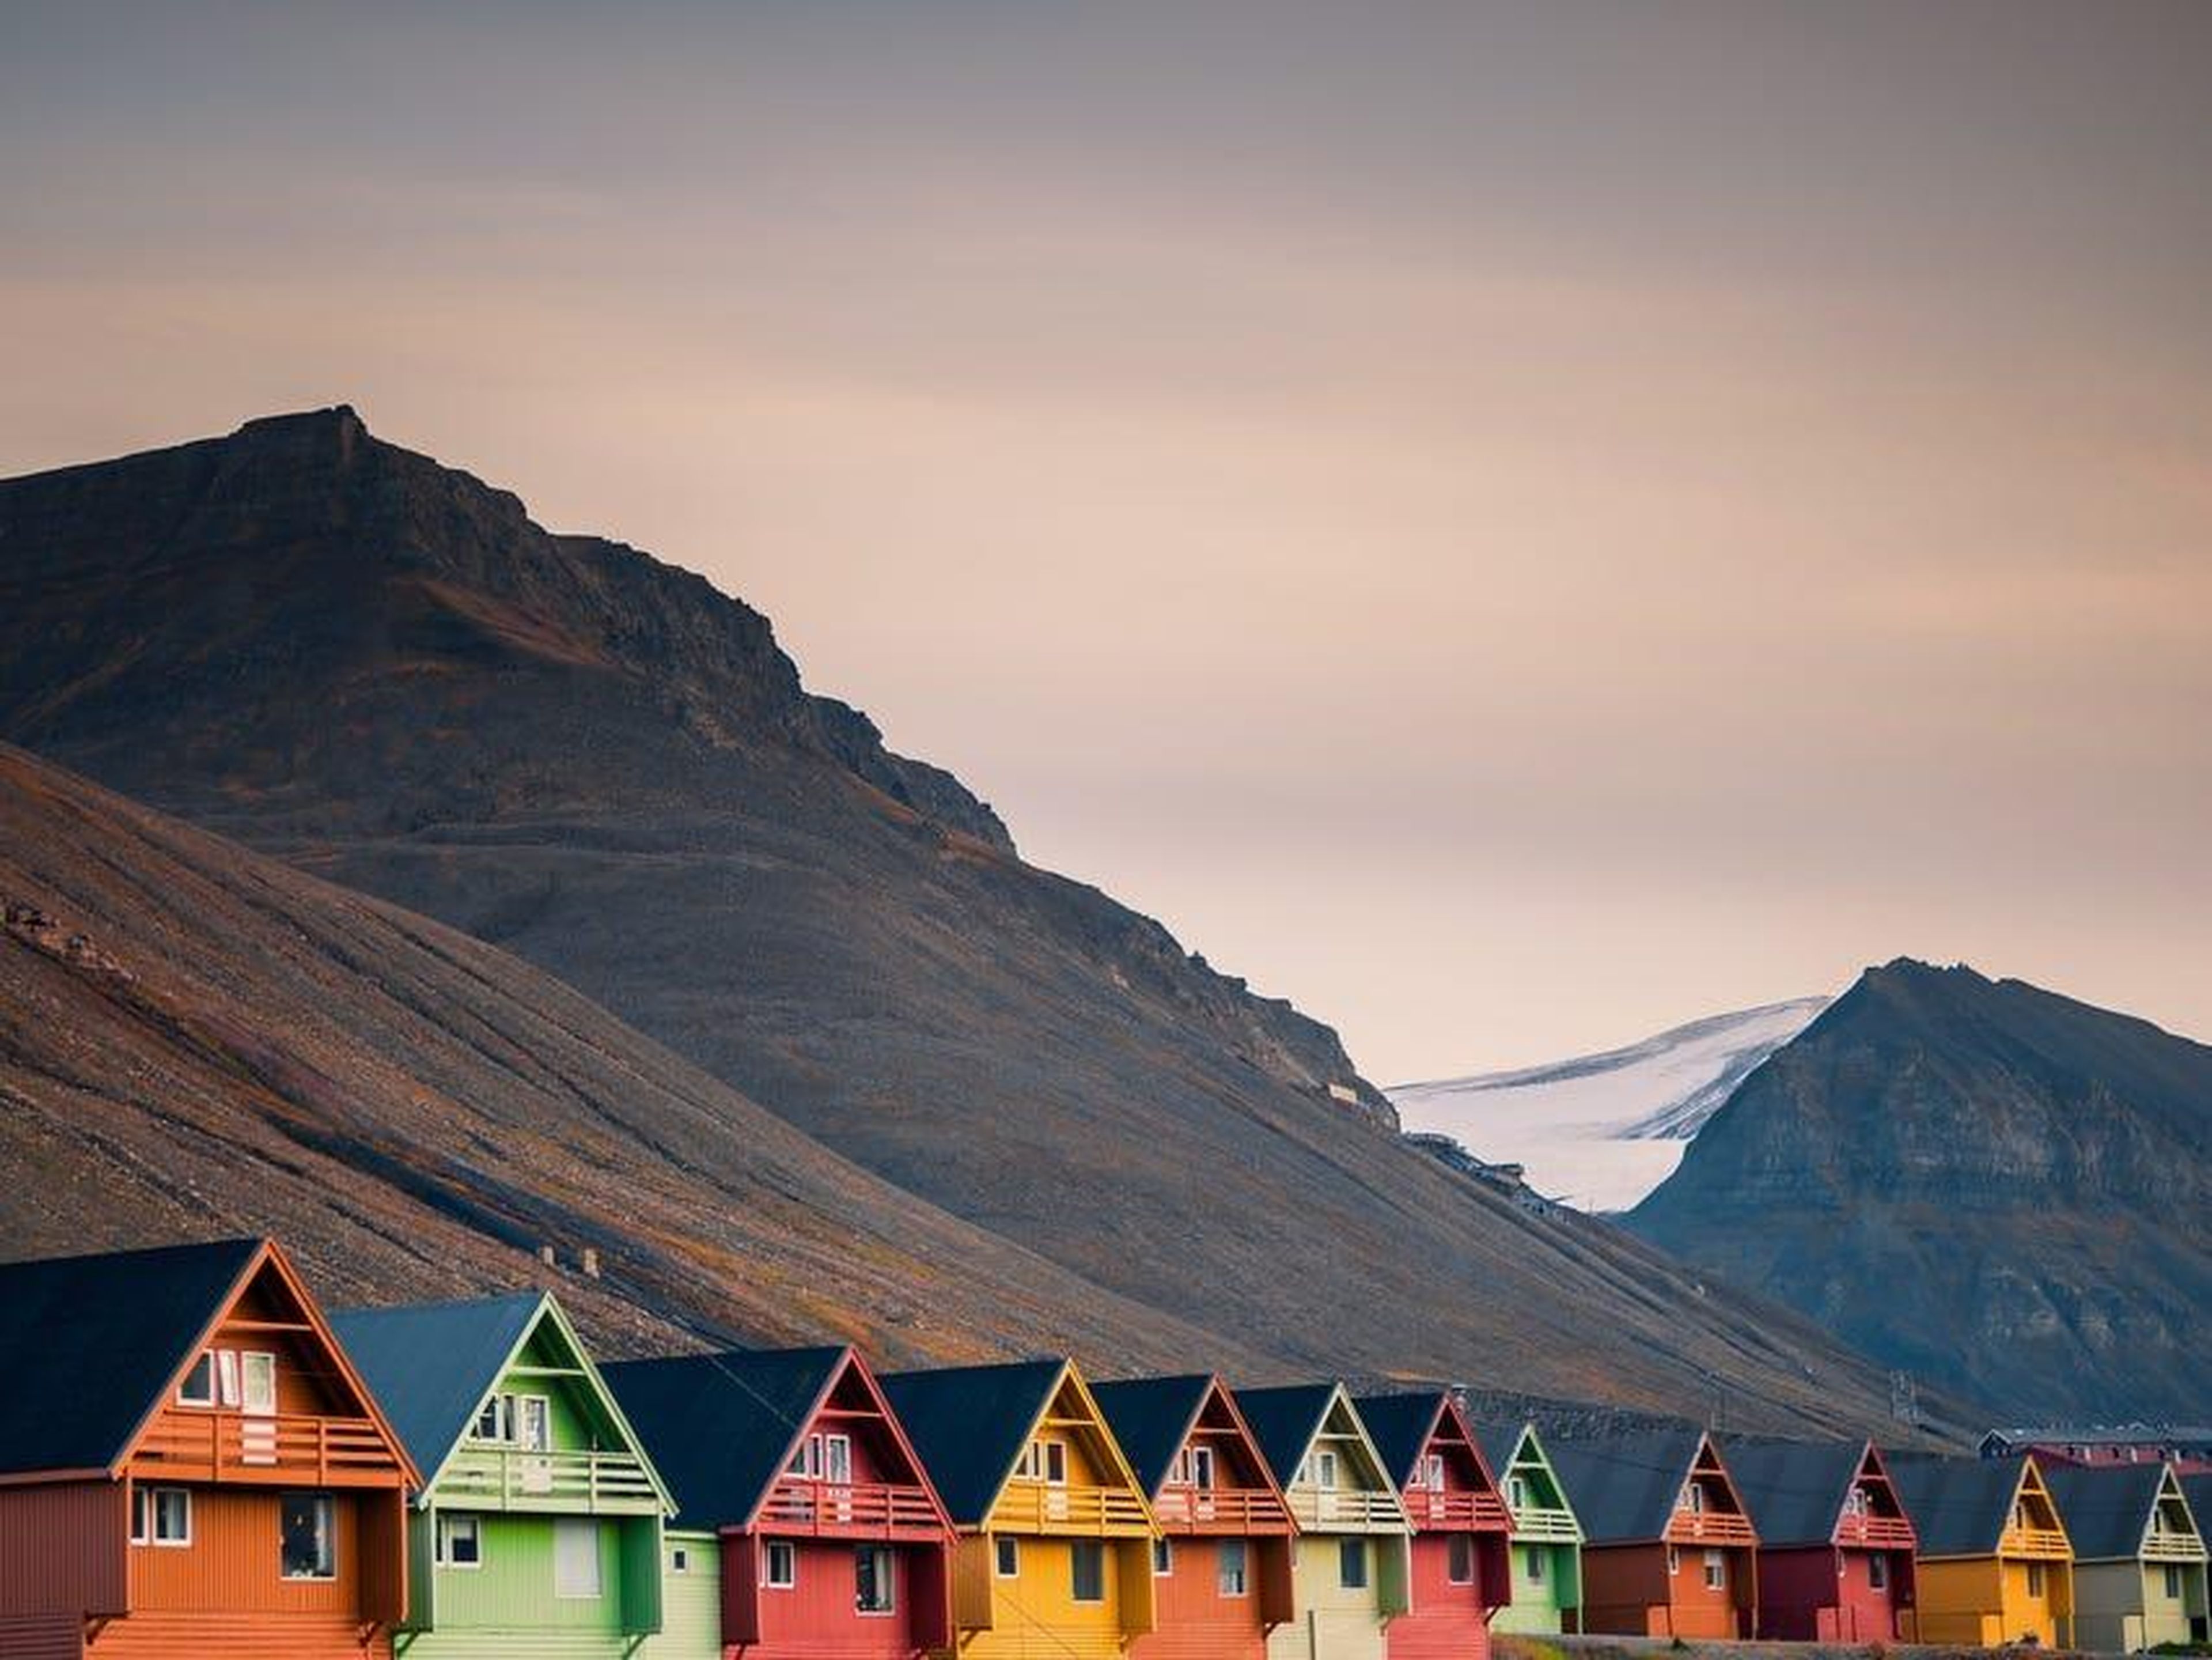 Casas coloridas en Longyearbyen.